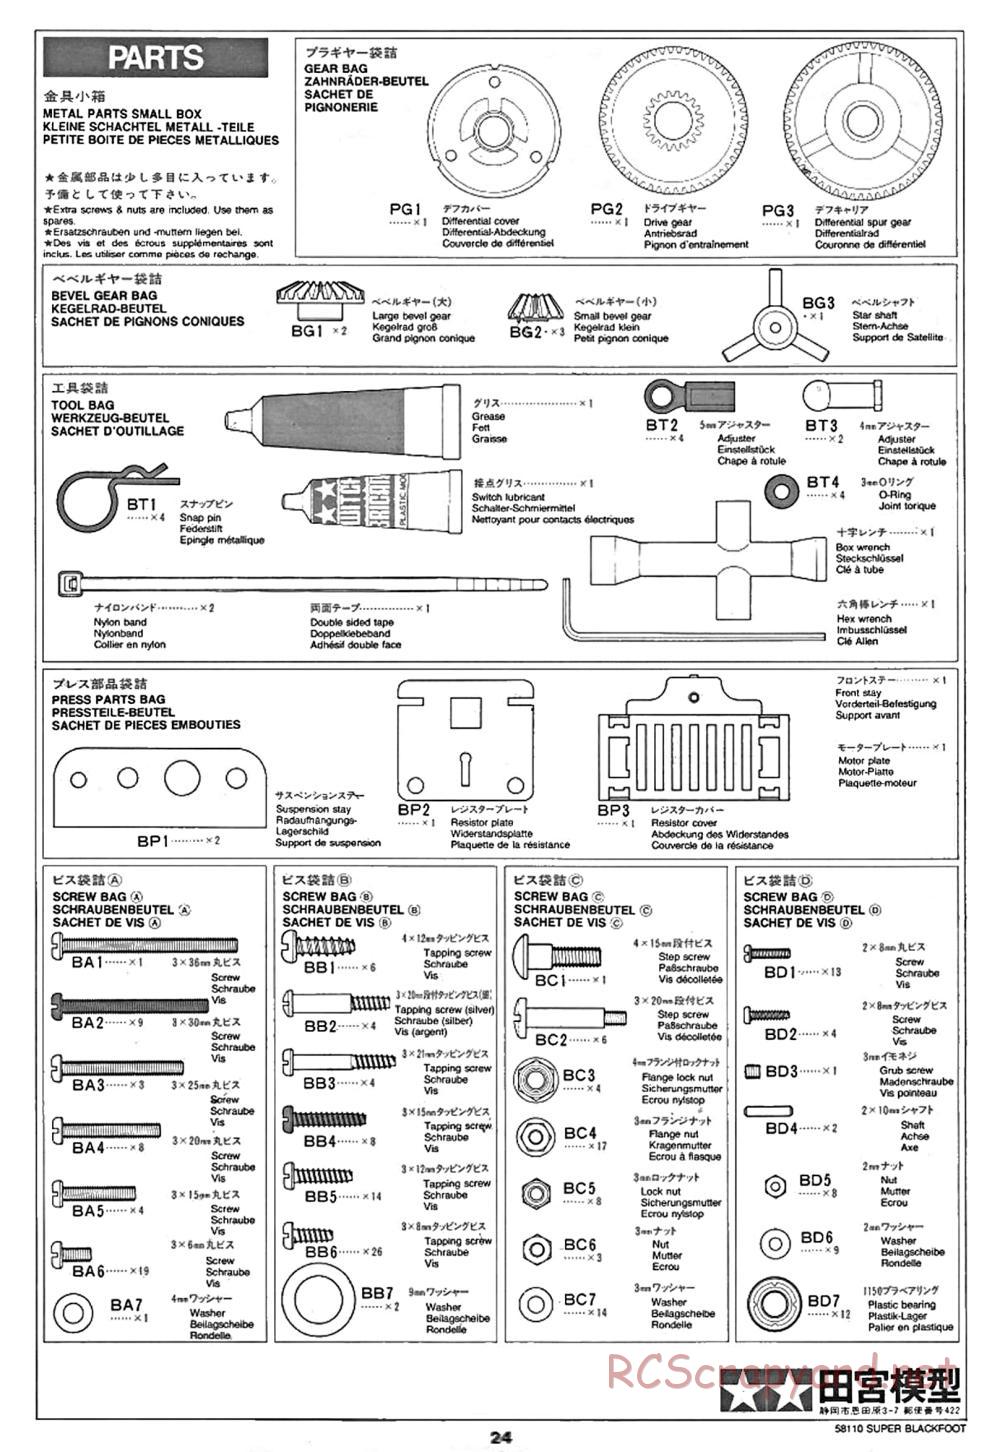 Tamiya - Super Blackfoot Chassis - Manual - Page 24